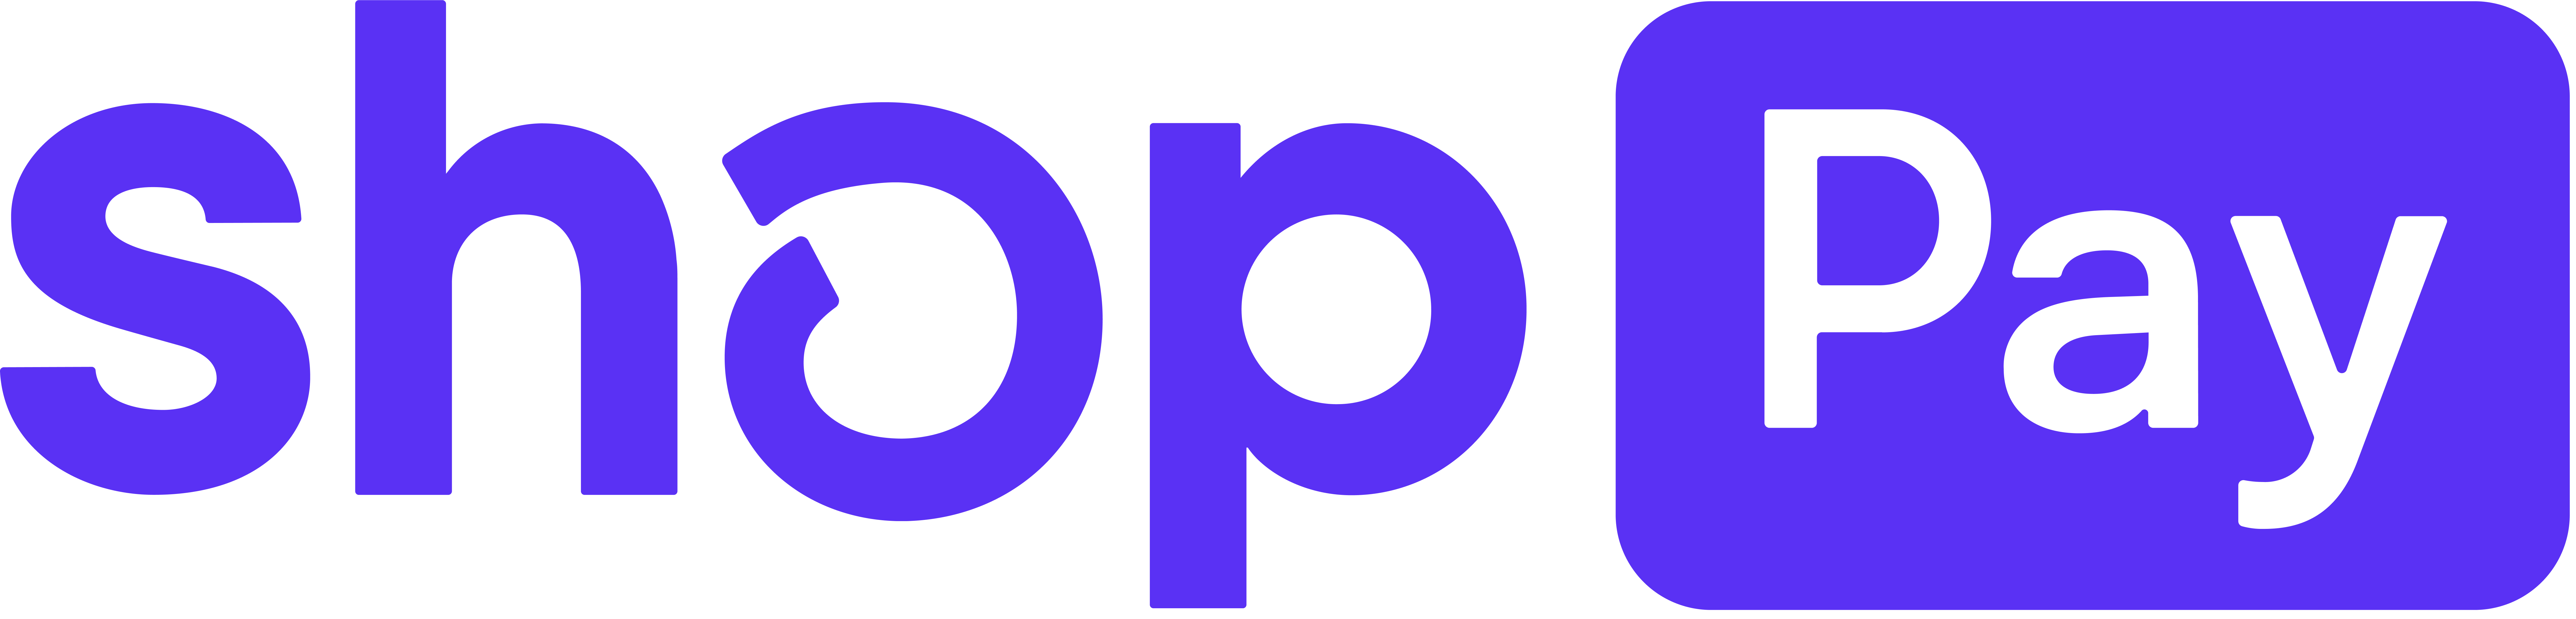 Shop Pay Logo